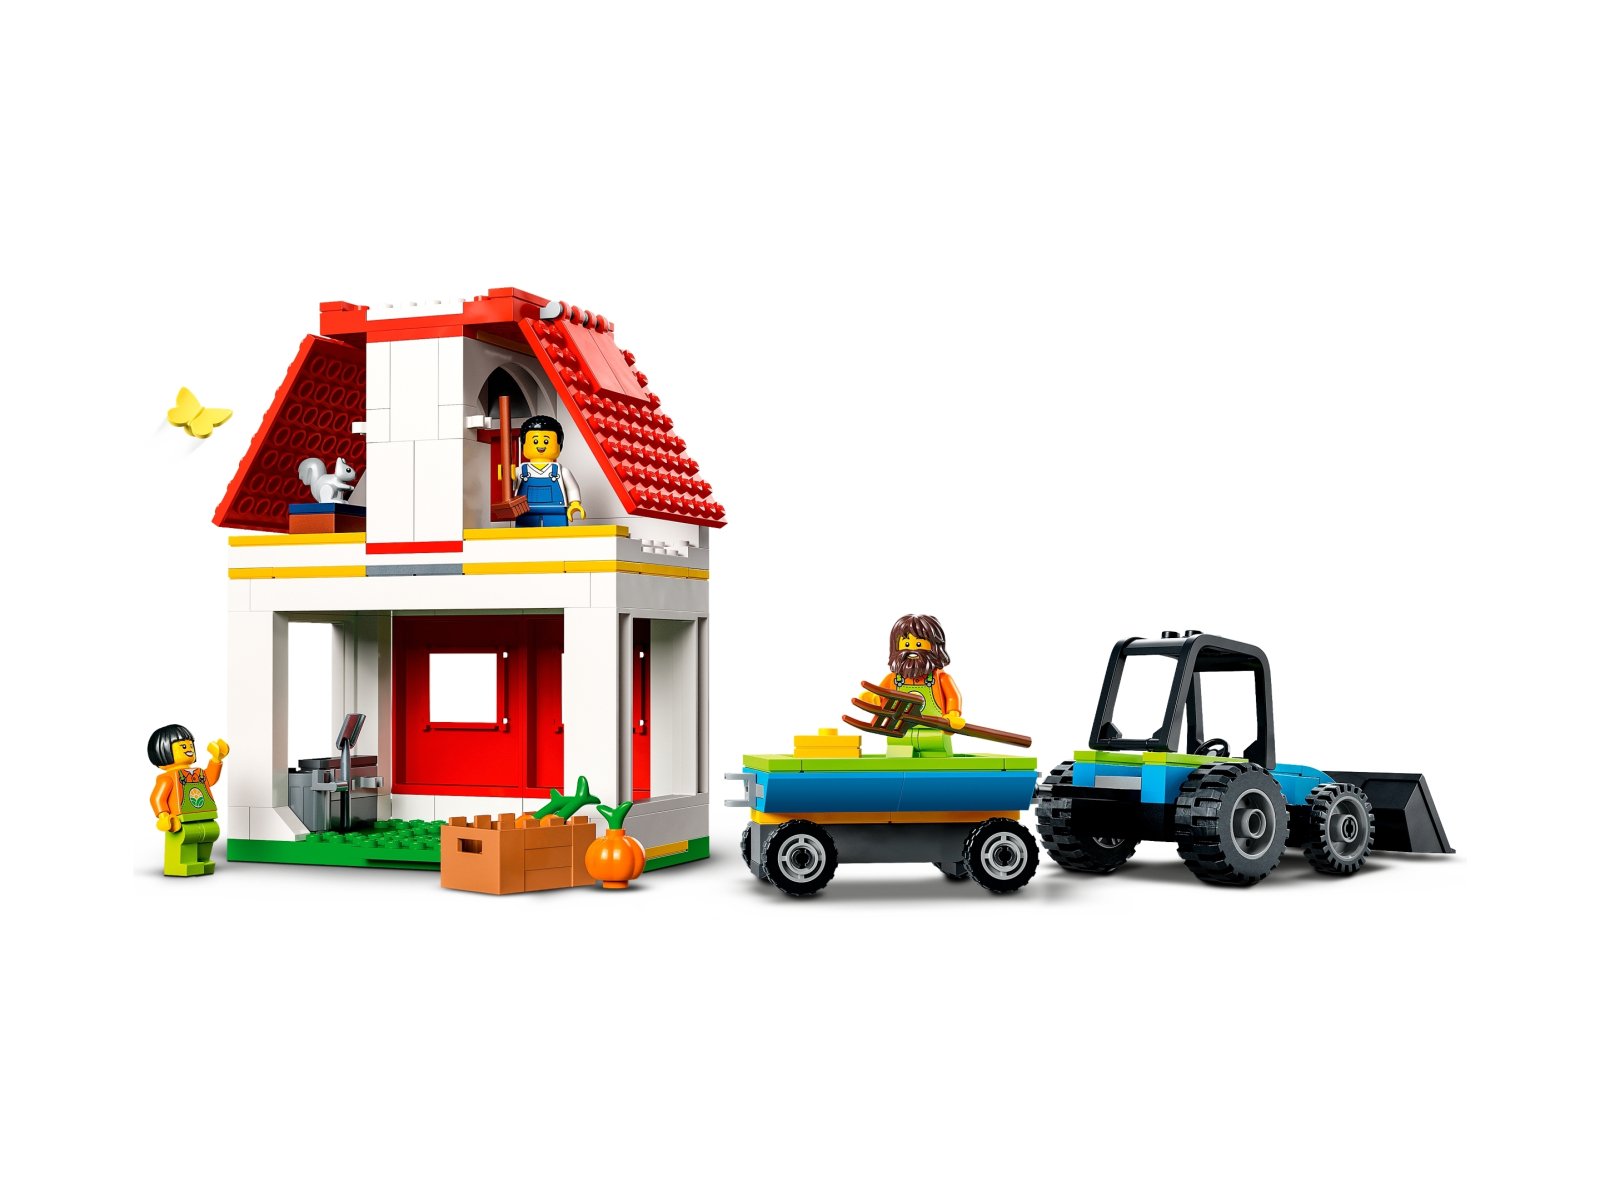 LEGO 60346 City Stodoła i zwierzęta gospodarskie